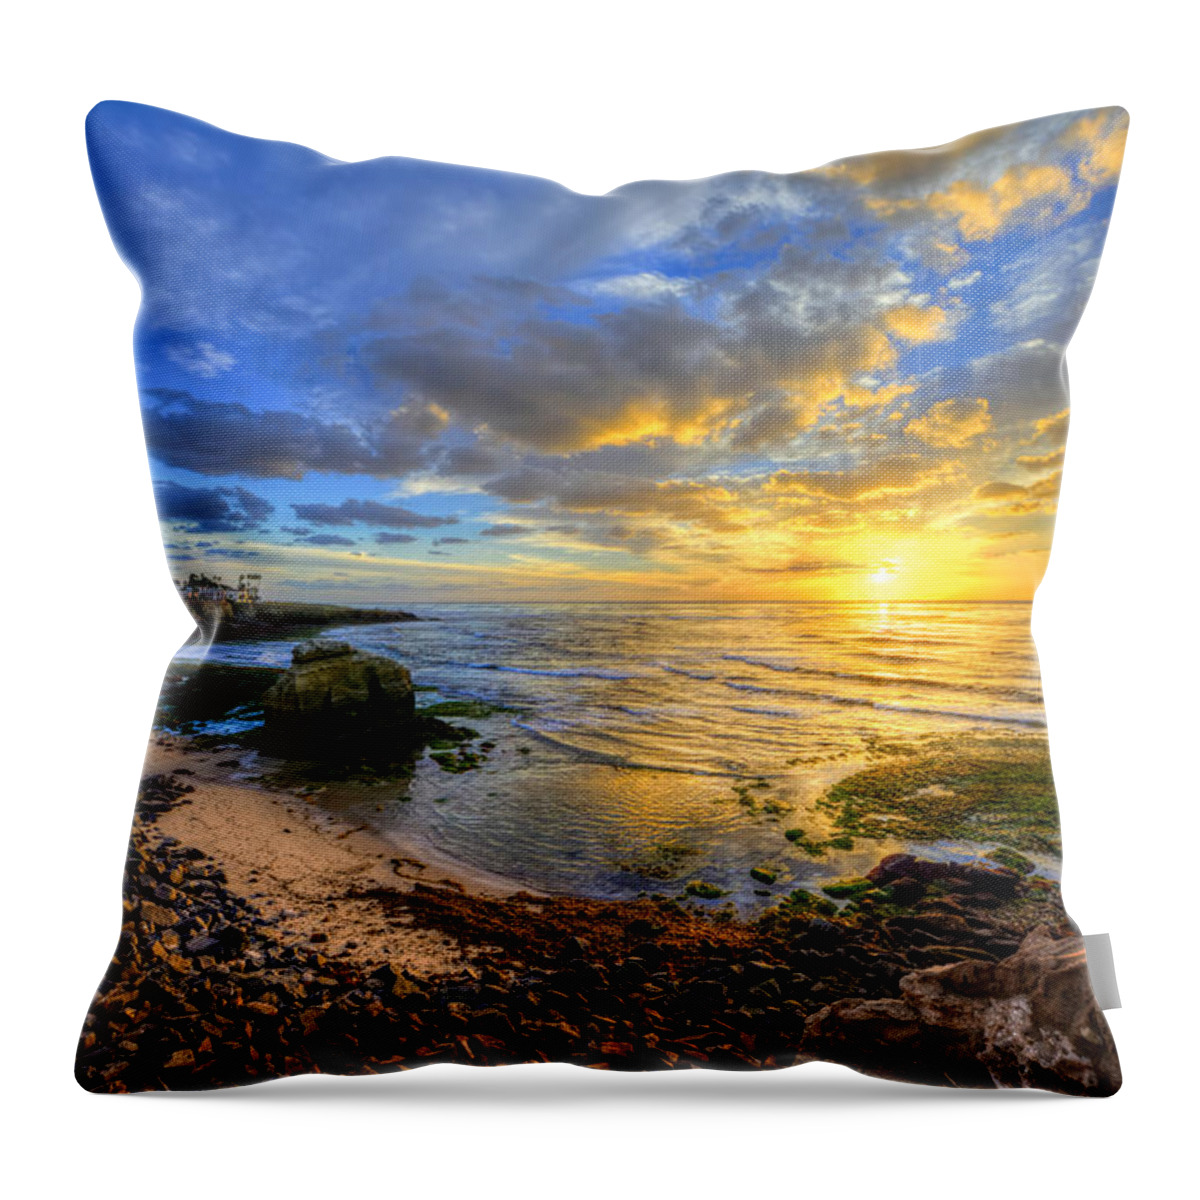 Mark Whitt Throw Pillow featuring the photograph Sunset Cliffs by Mark Whitt